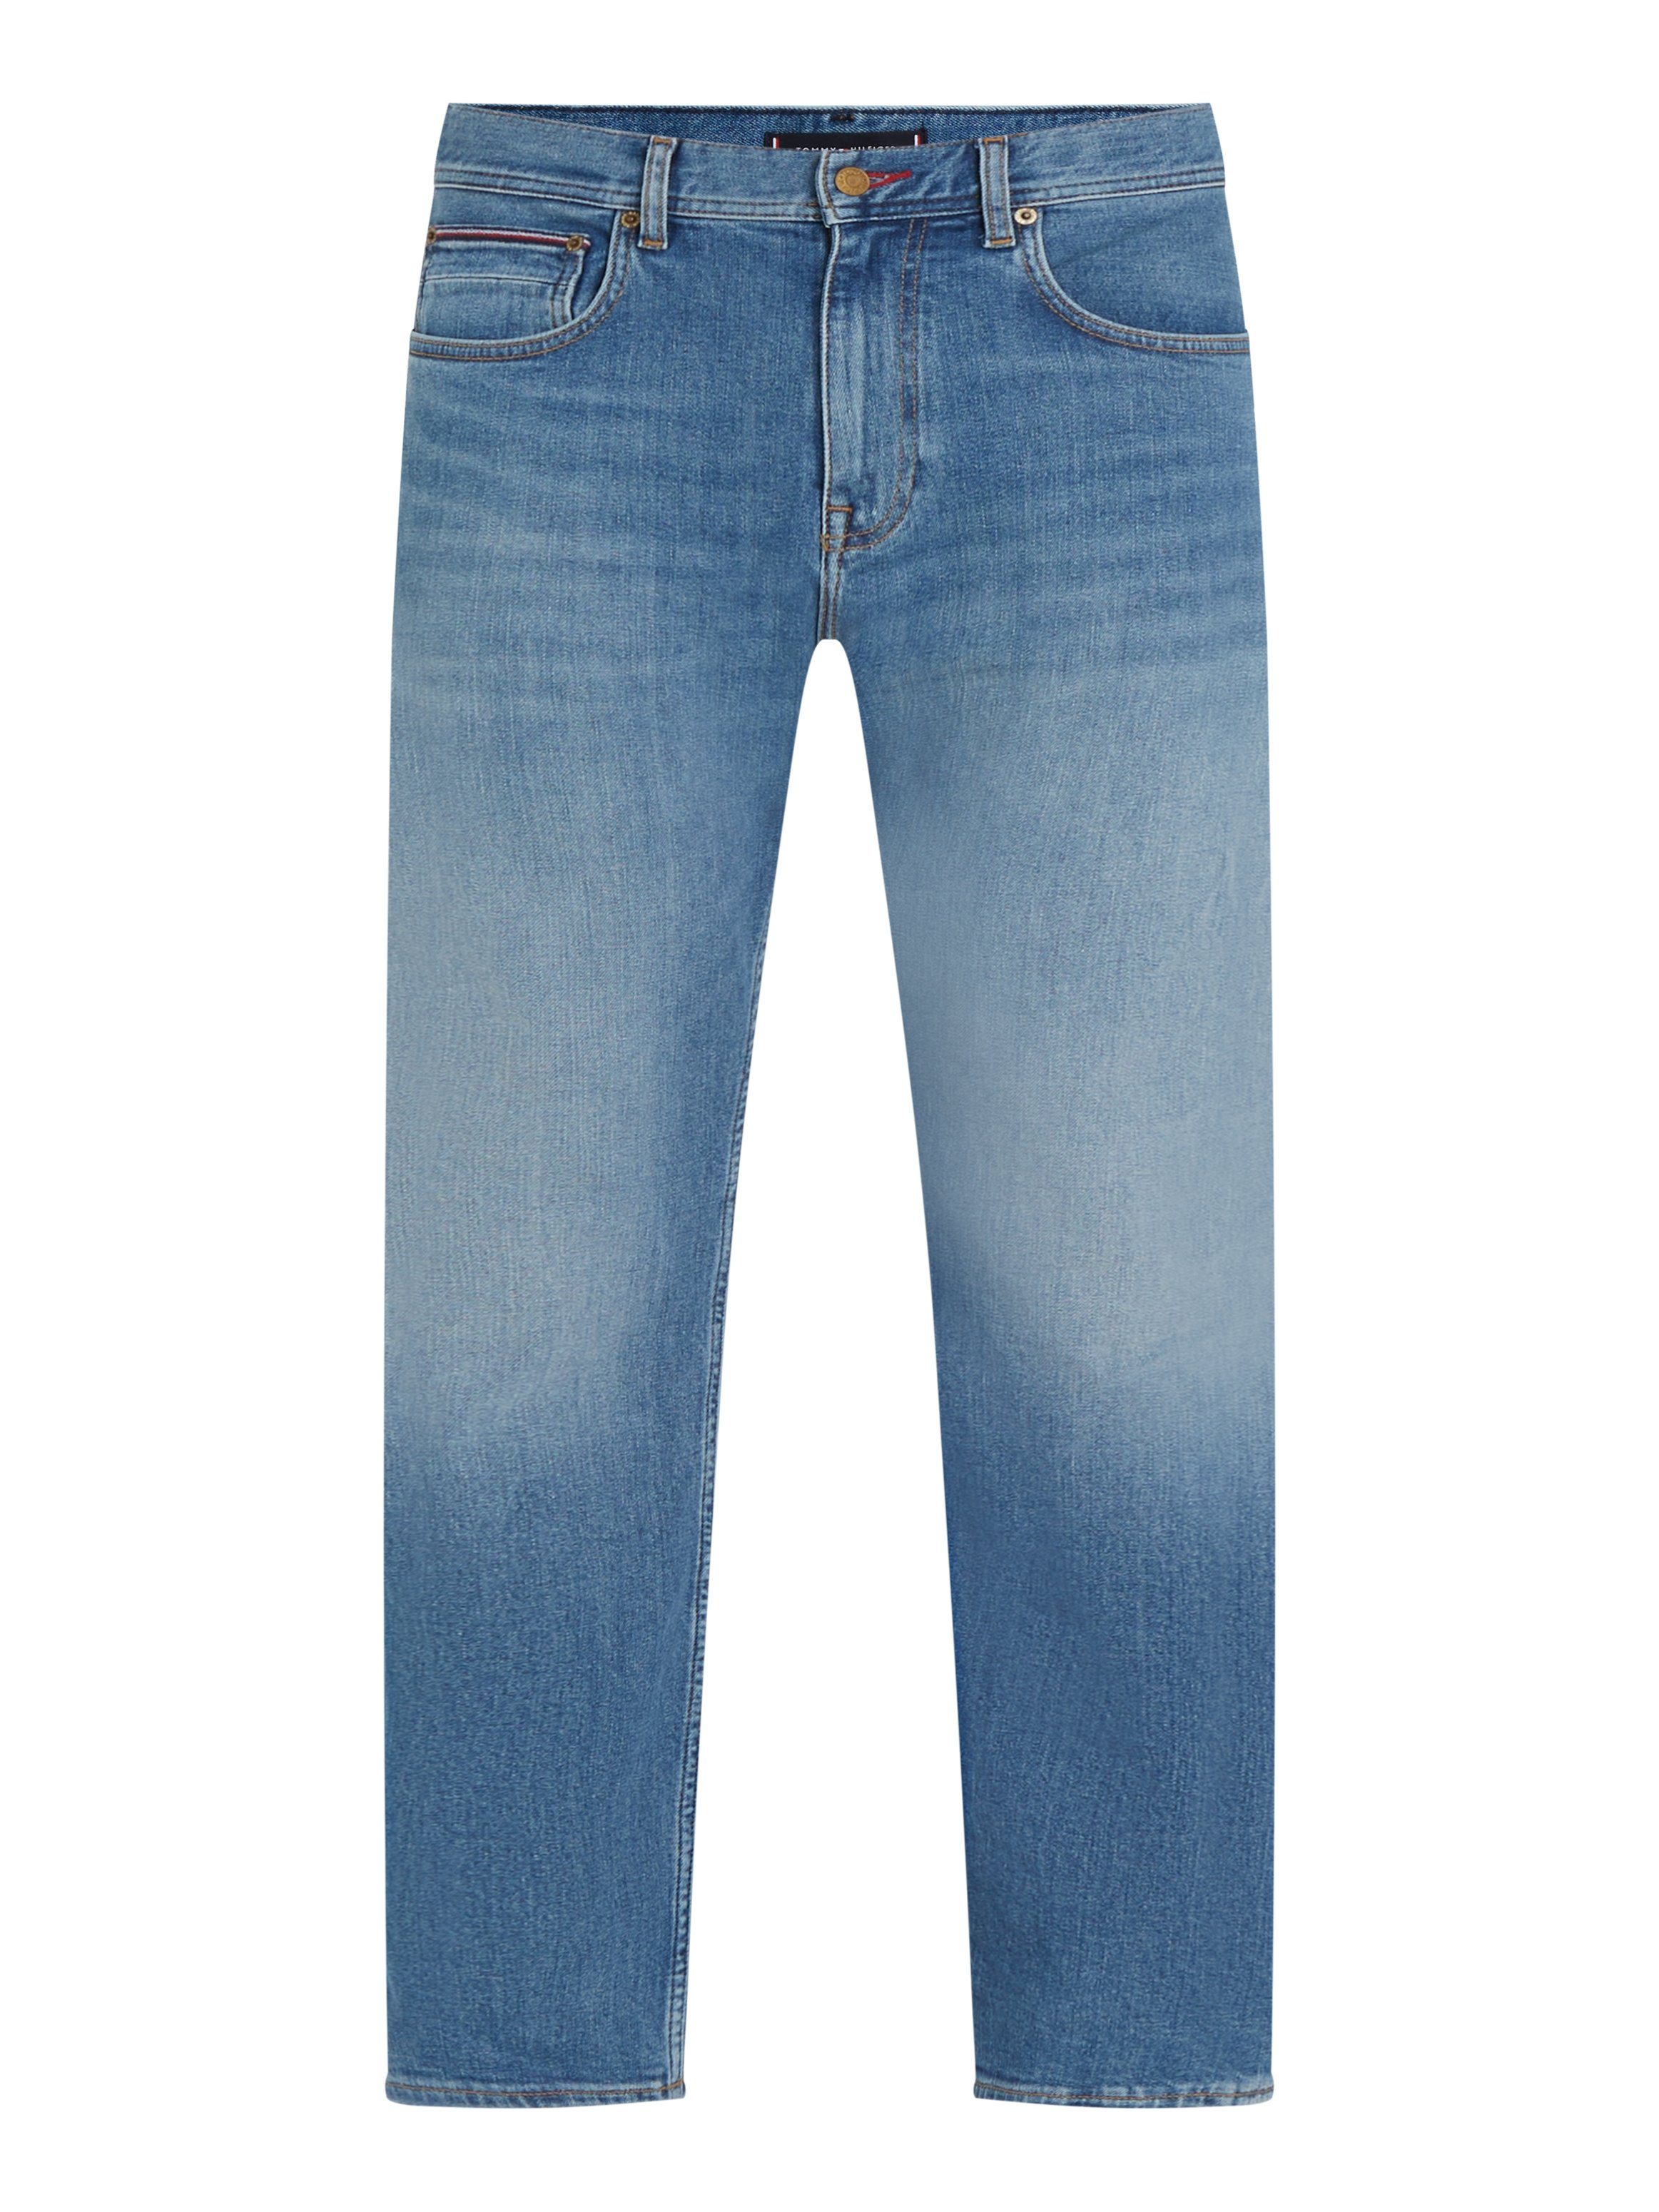 MERCER Jeans 5-Pocket-Jeans IND BRIDGER Hilfiger Boston STR Indigo Tommy REGULAR